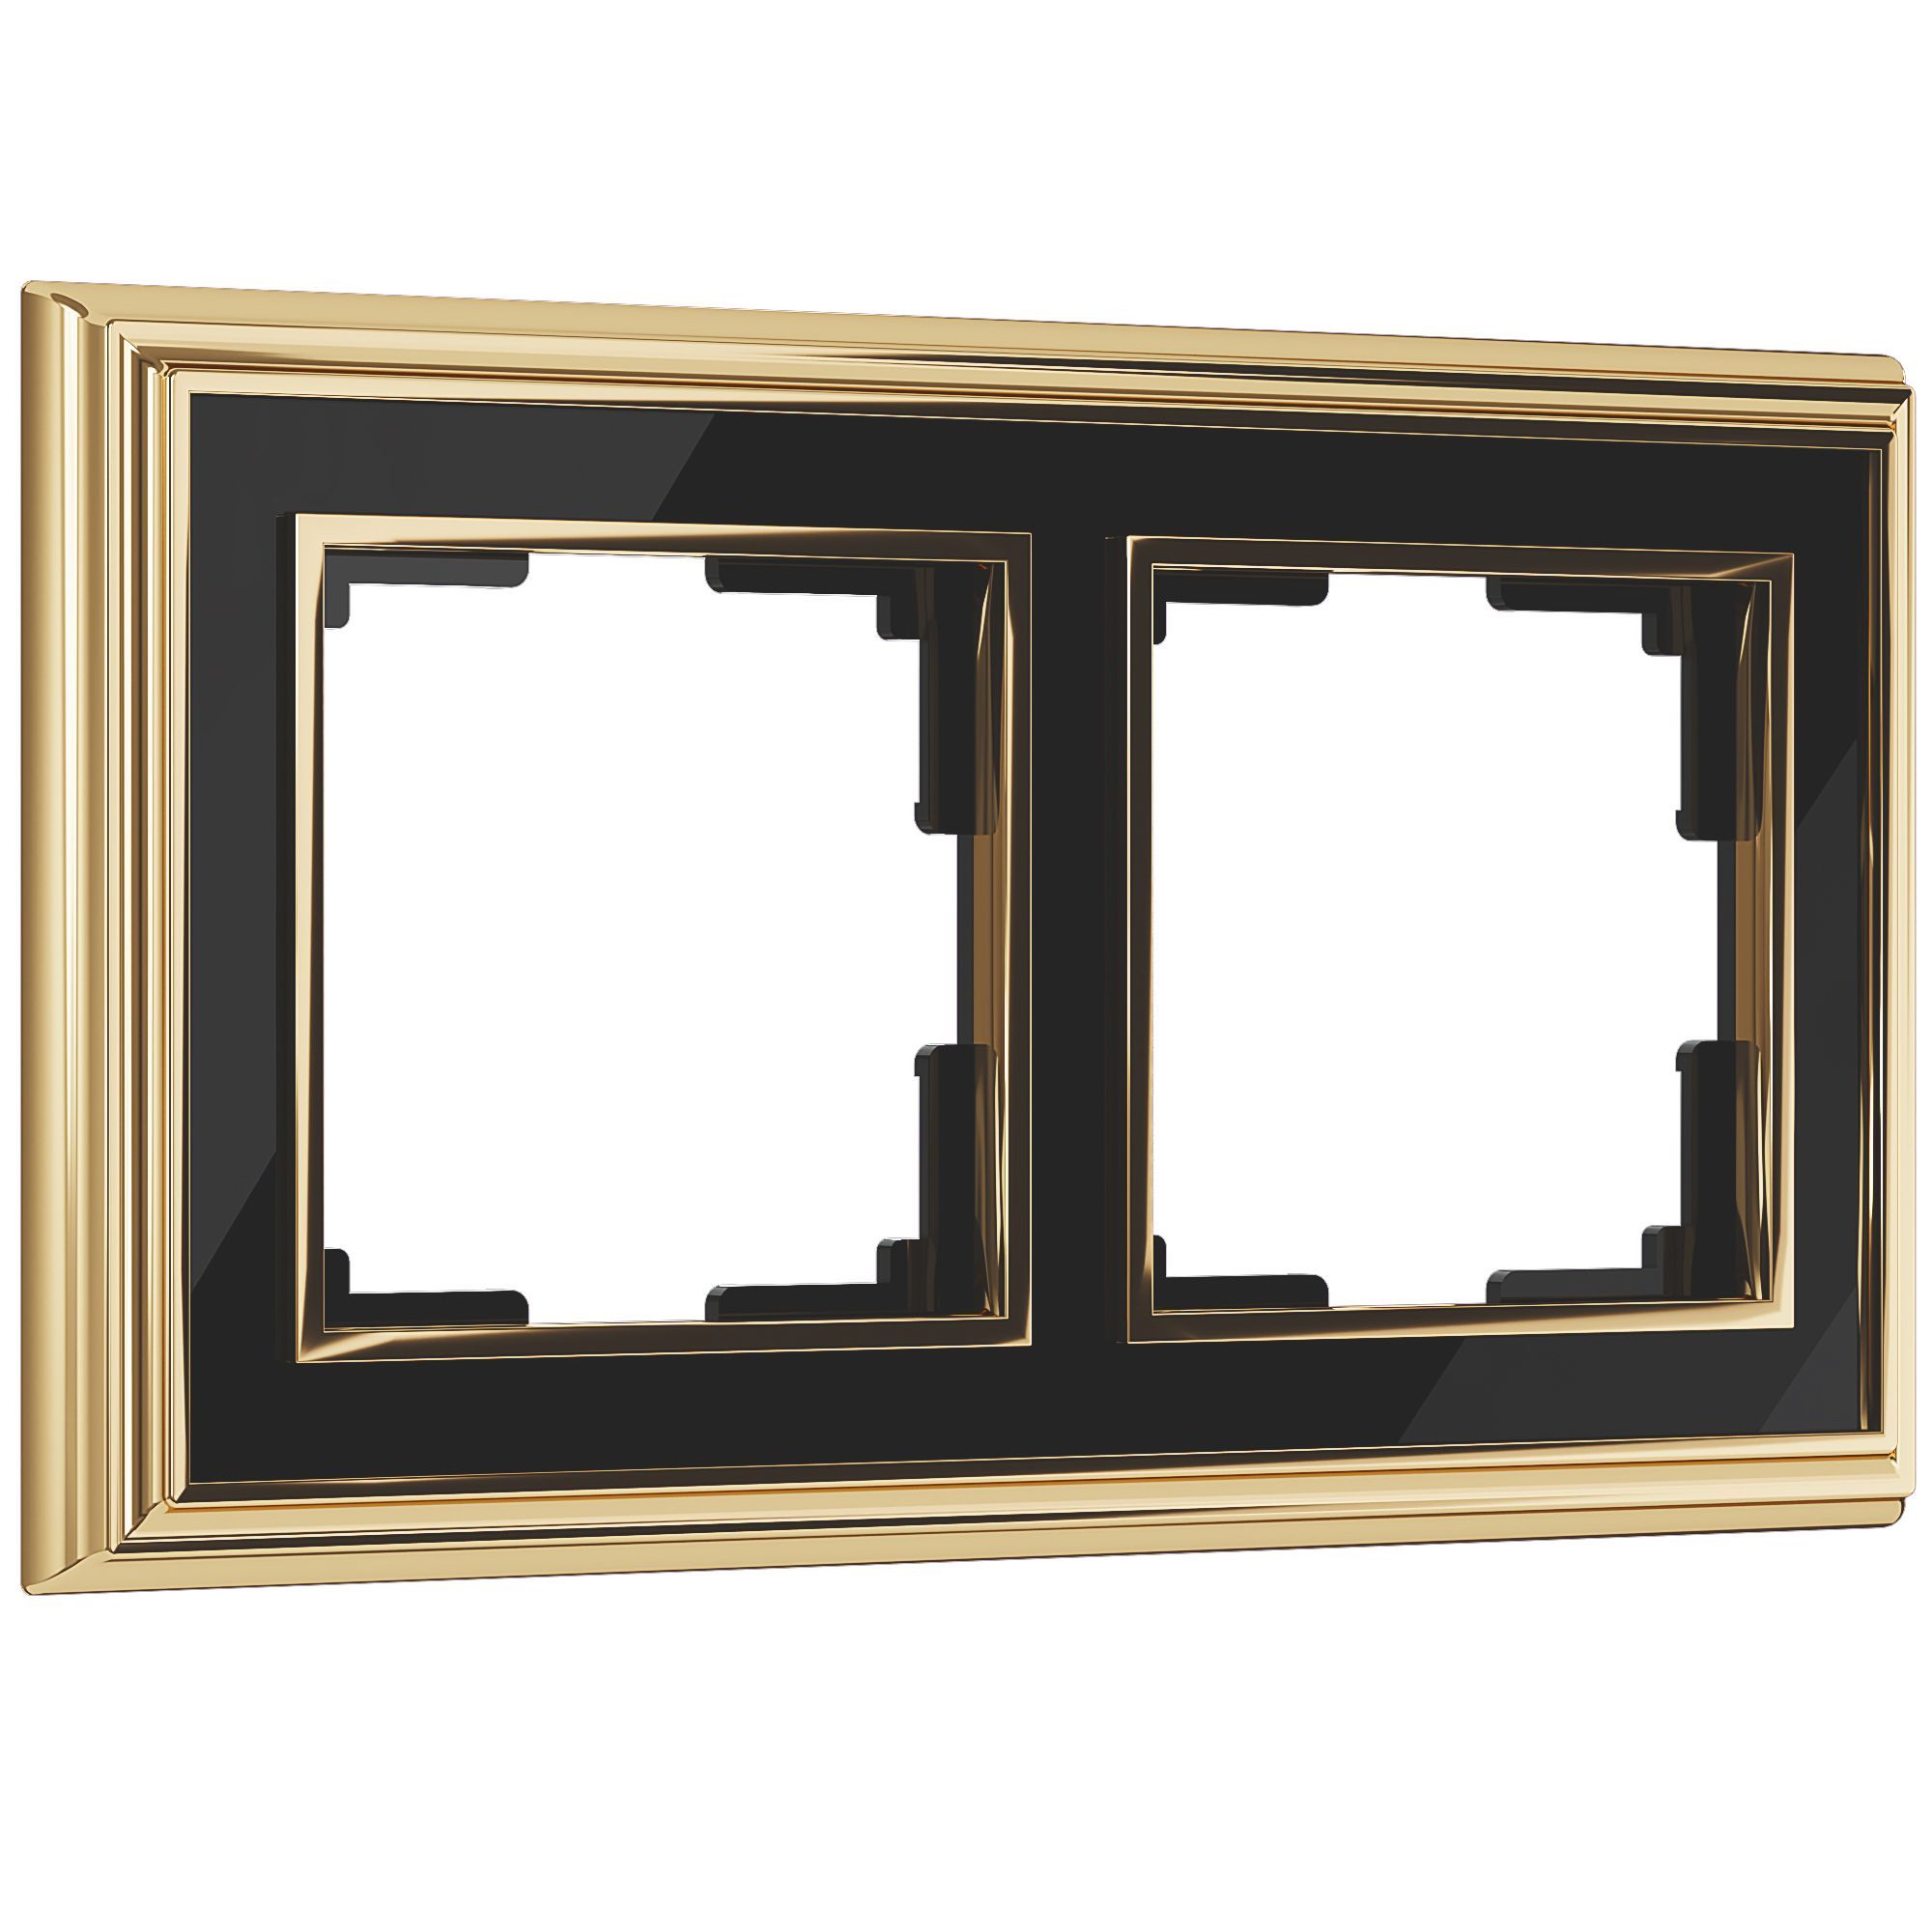 Рамка из металла на 2 поста Palacio золото/черный Werkel Palacio золото/черный WL17-Frame-02. Фото 1